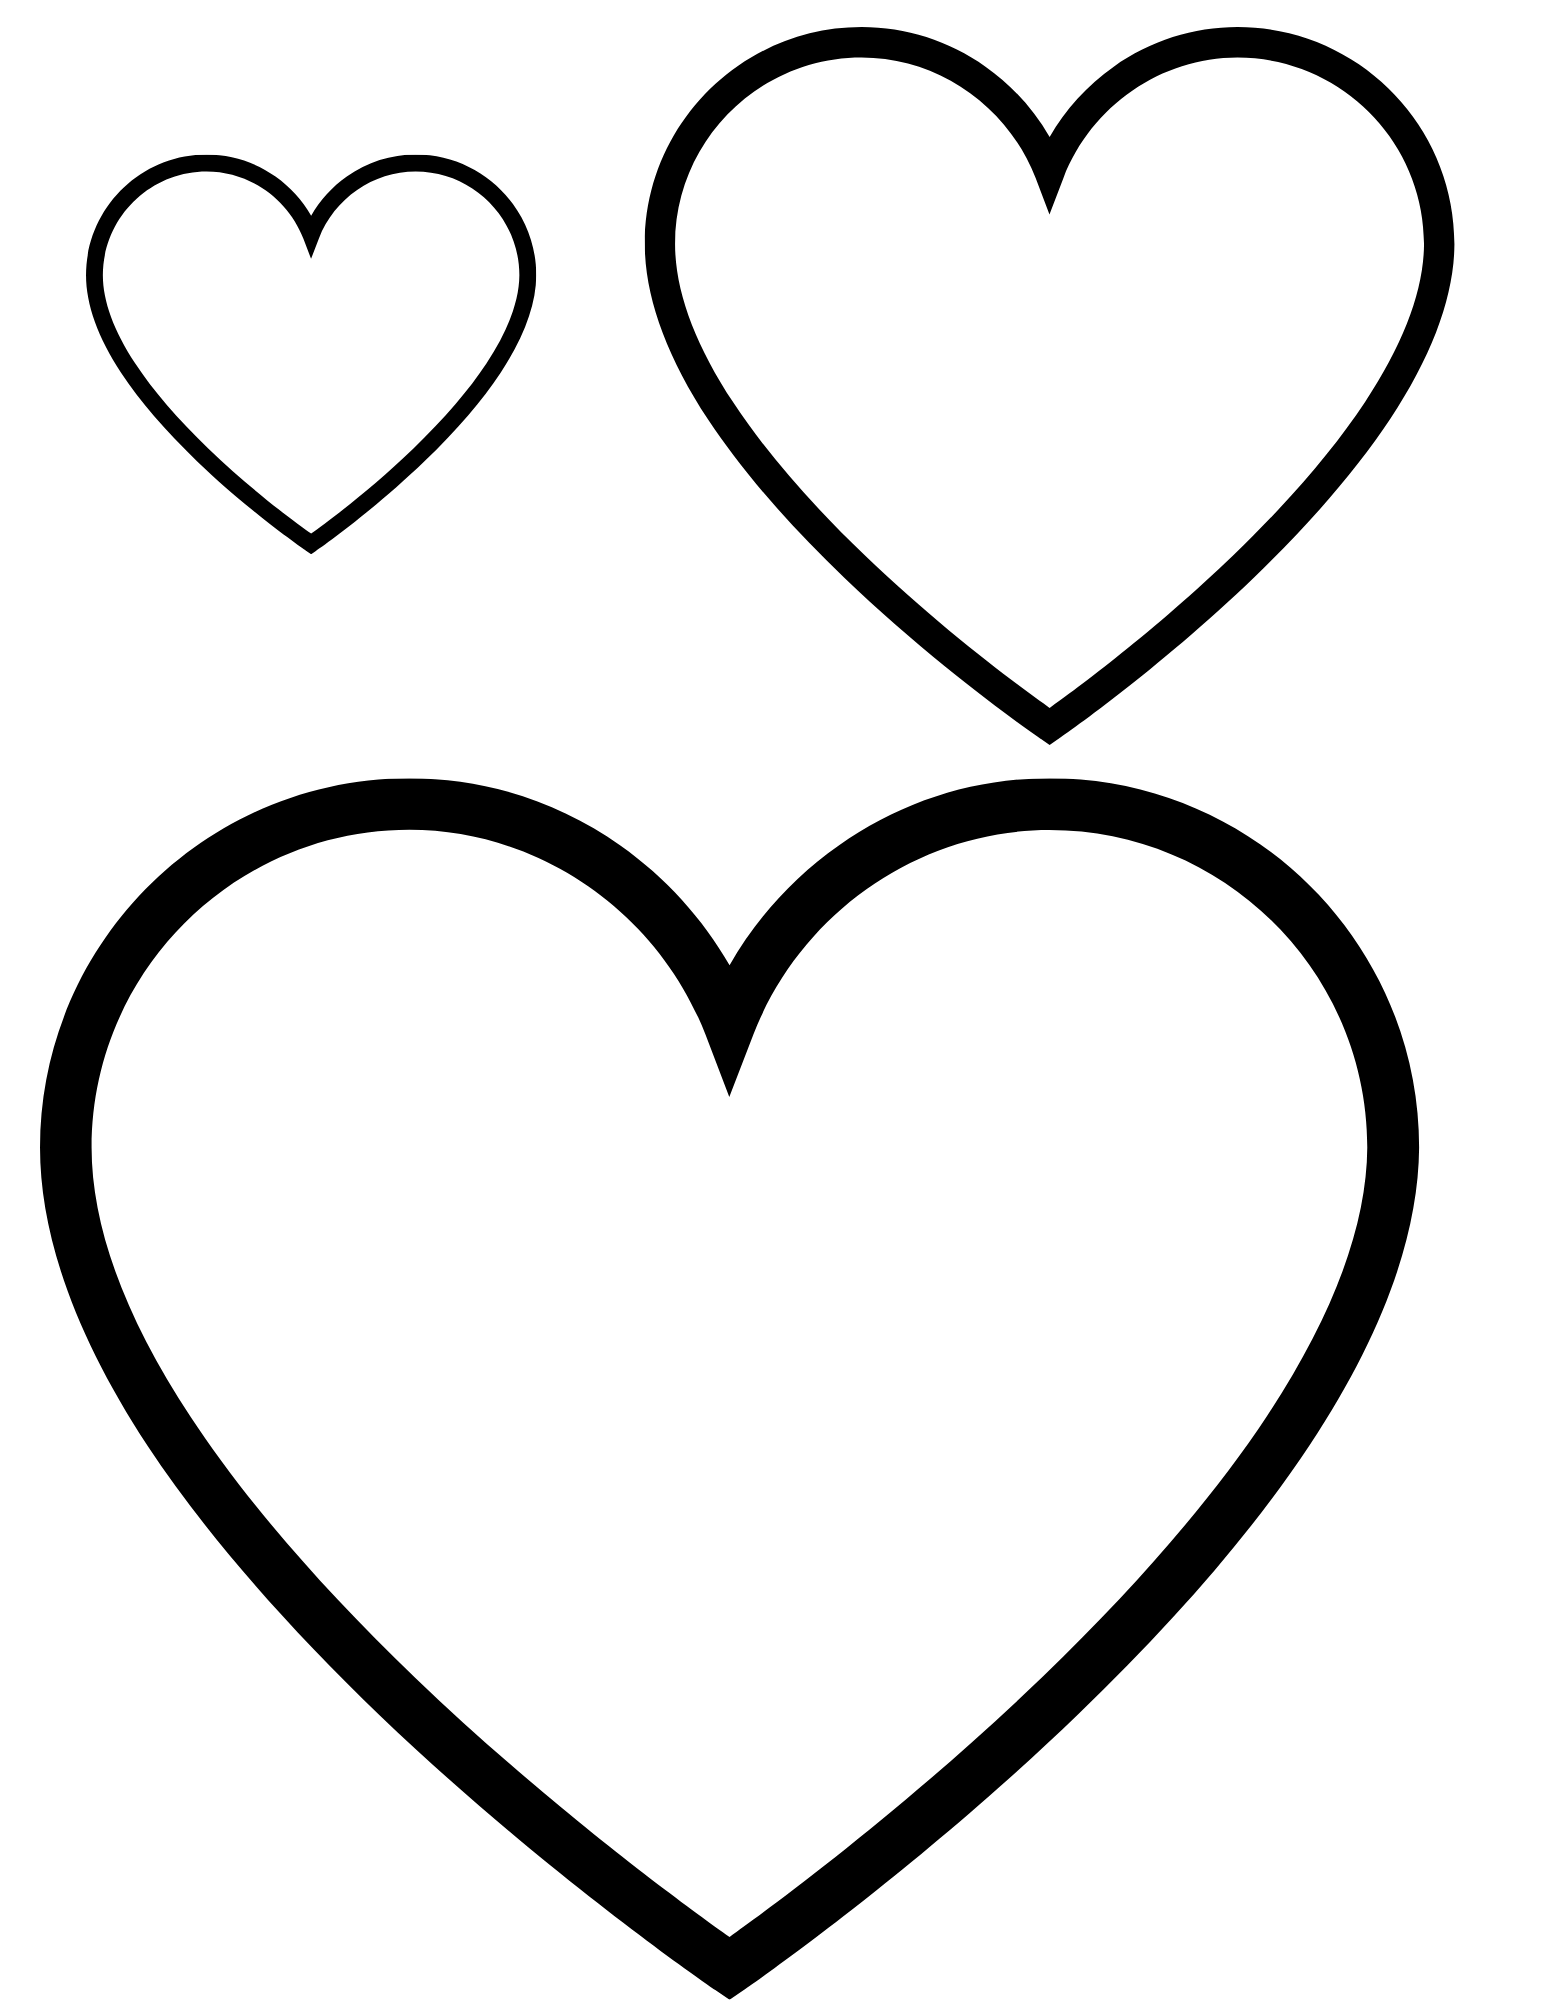 Шаблон сердечко для вырезания из бумаги распечатать. Сердце шаблон. Сердечко шаблон. Сердце трафарет. Шаблолон сердце.